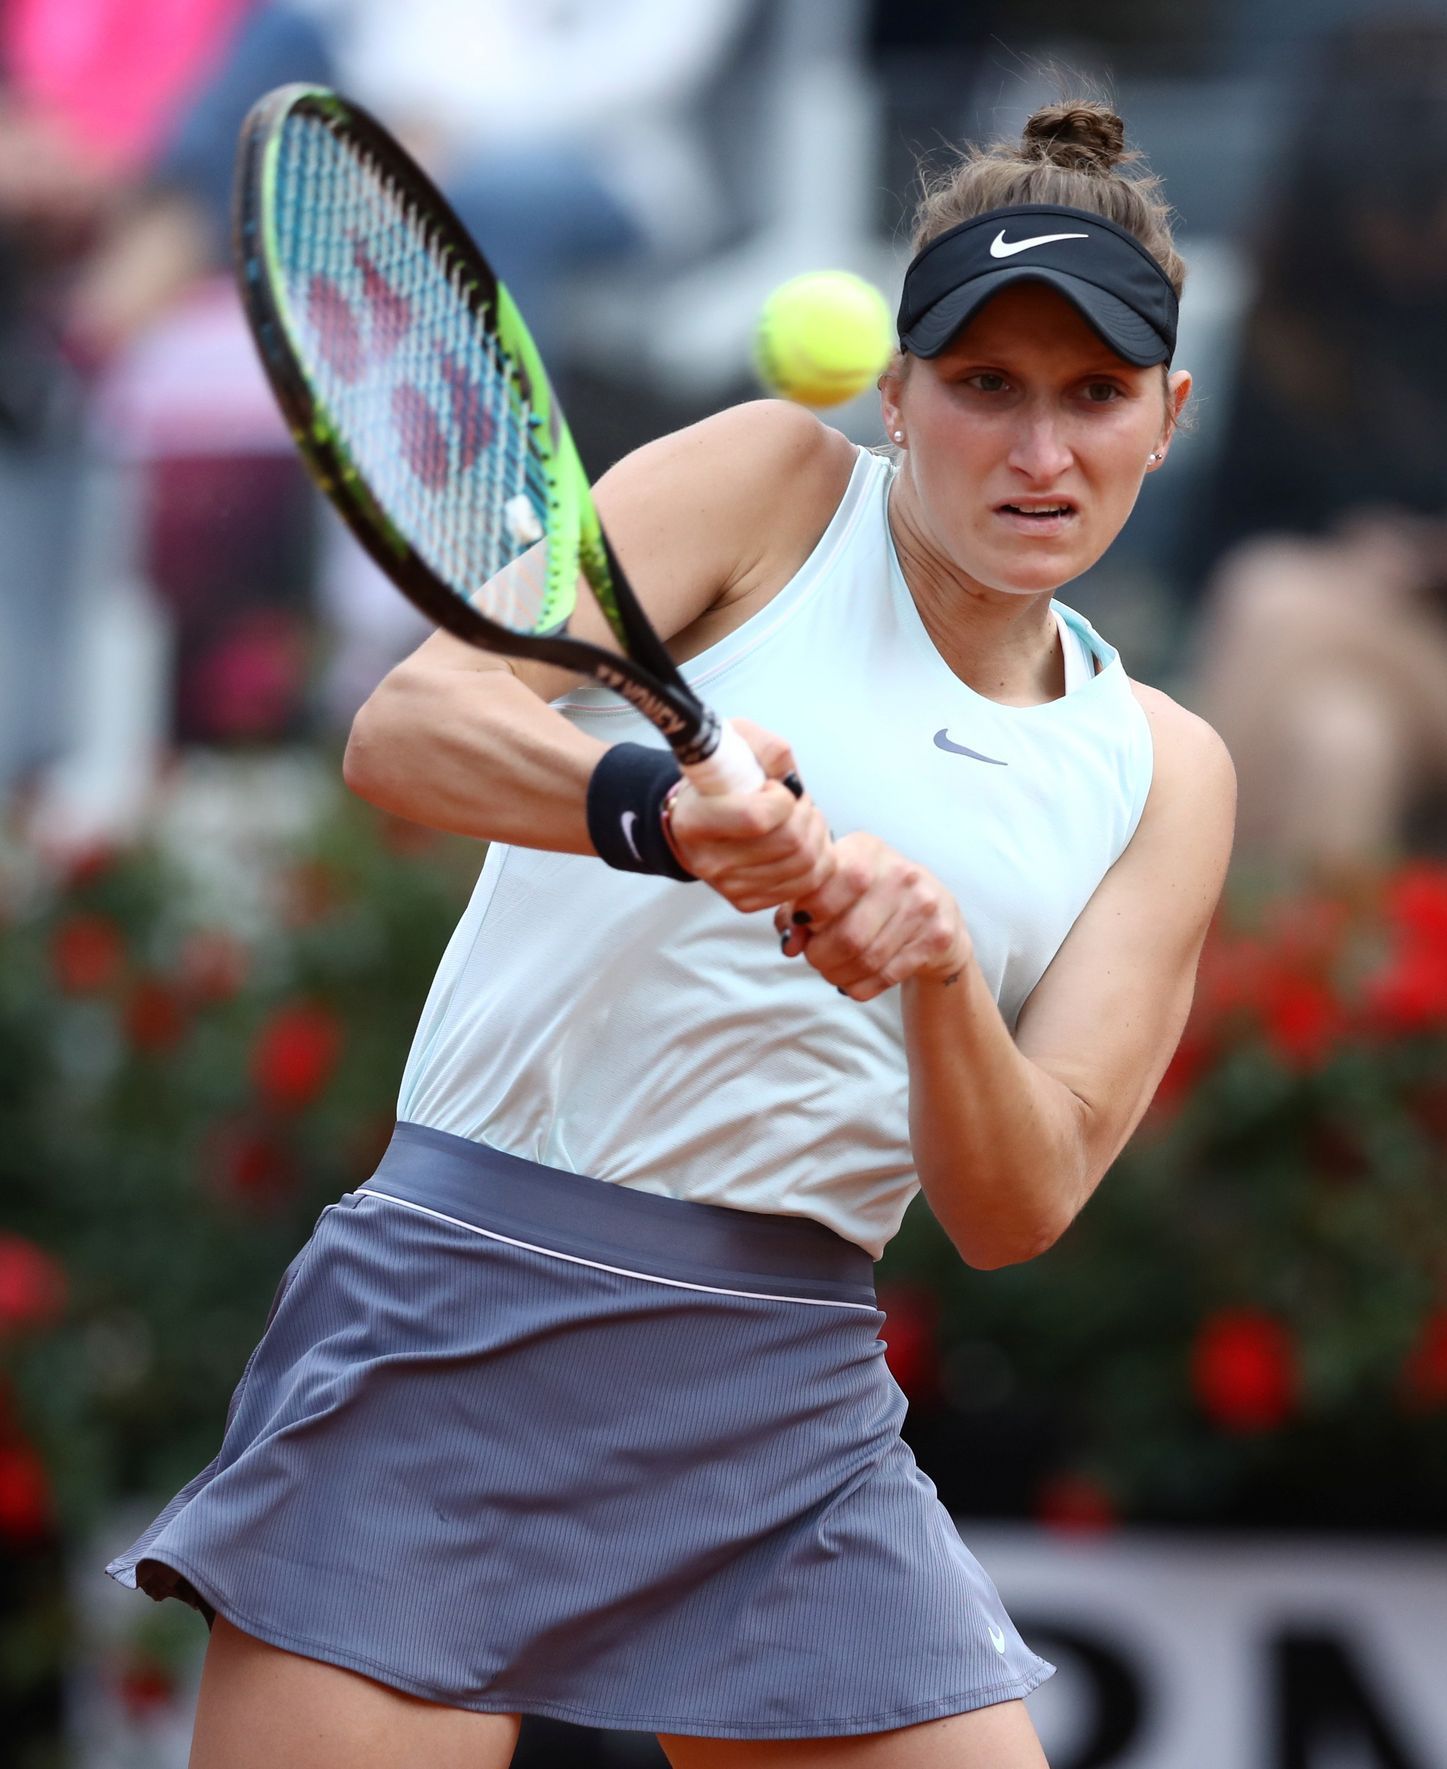 WTA Premier 5 - Italian Open, Markéta Vondroušová